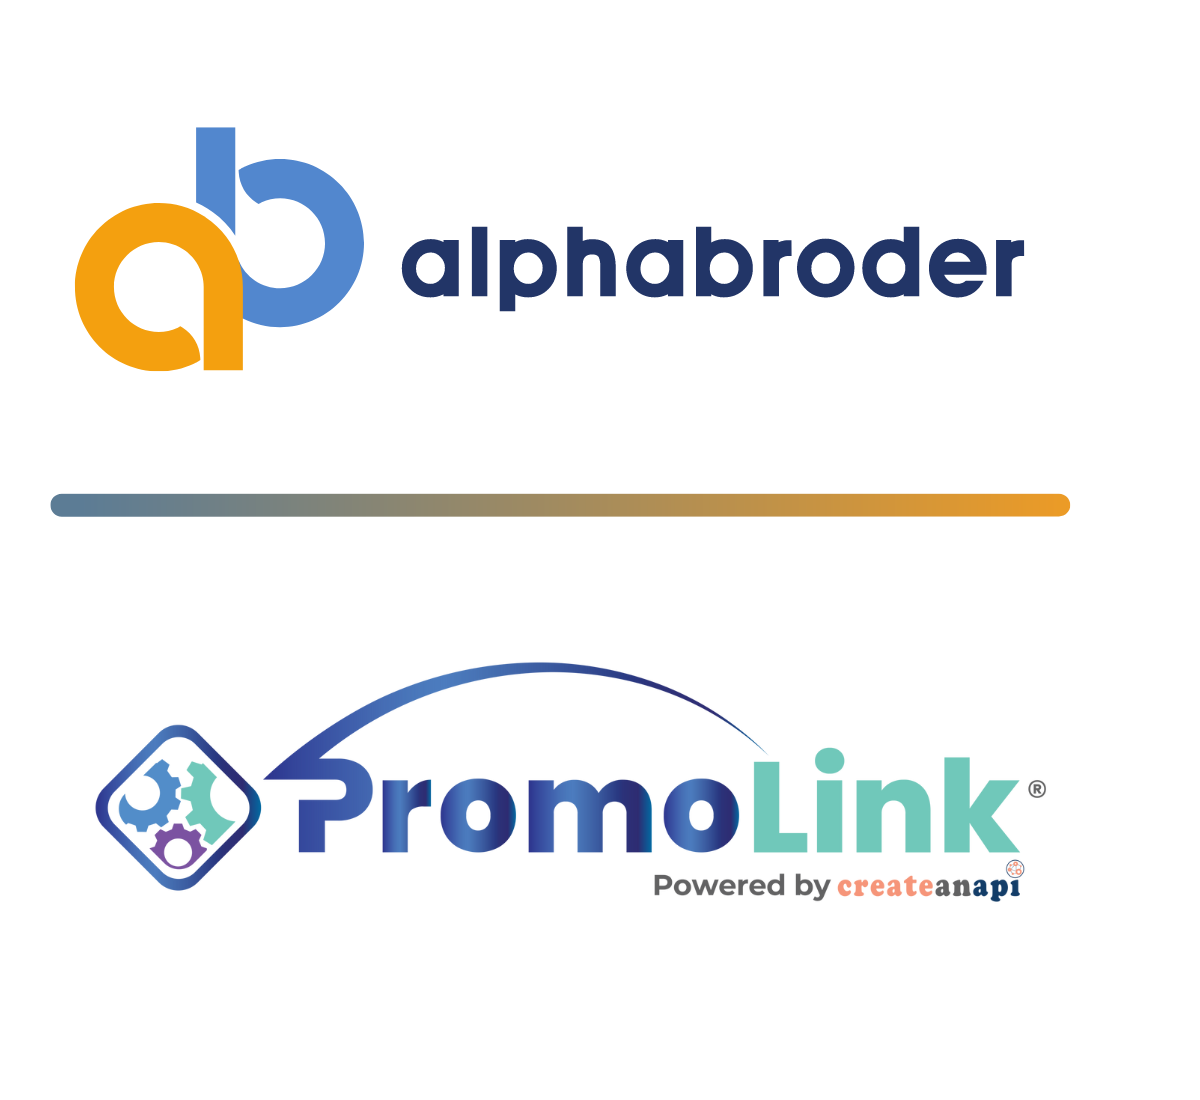 PromoLink is your digital link to alphabroder